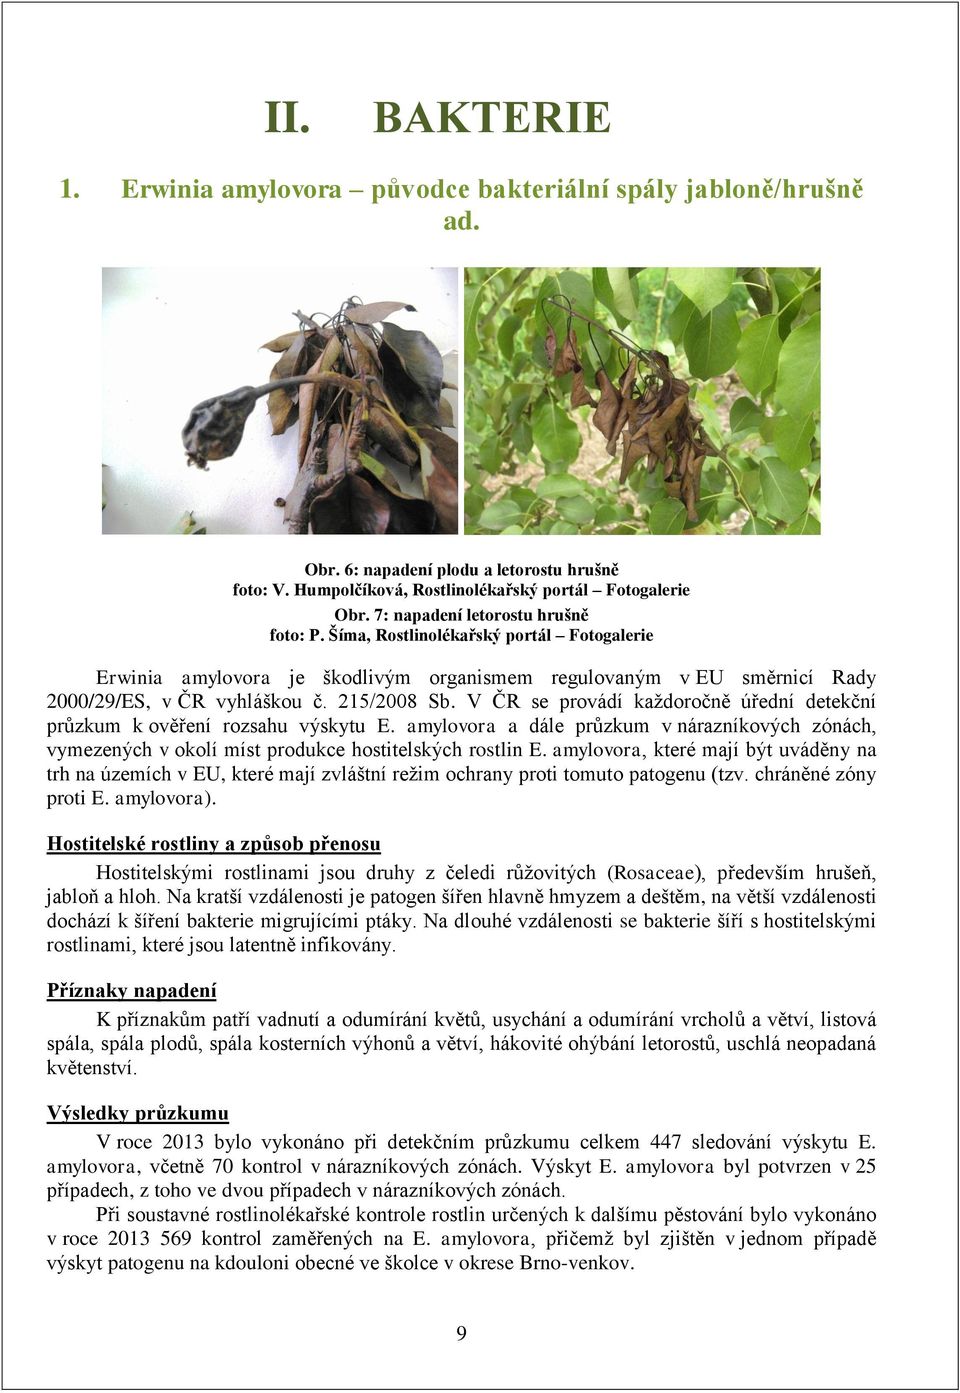 V ČR se provádí každoročně úřední detekční průzkum k ověření rozsahu výskytu E. amylovora a dále průzkum v nárazníkových zónách, vymezených v okolí míst produkce hostitelských rostlin E.